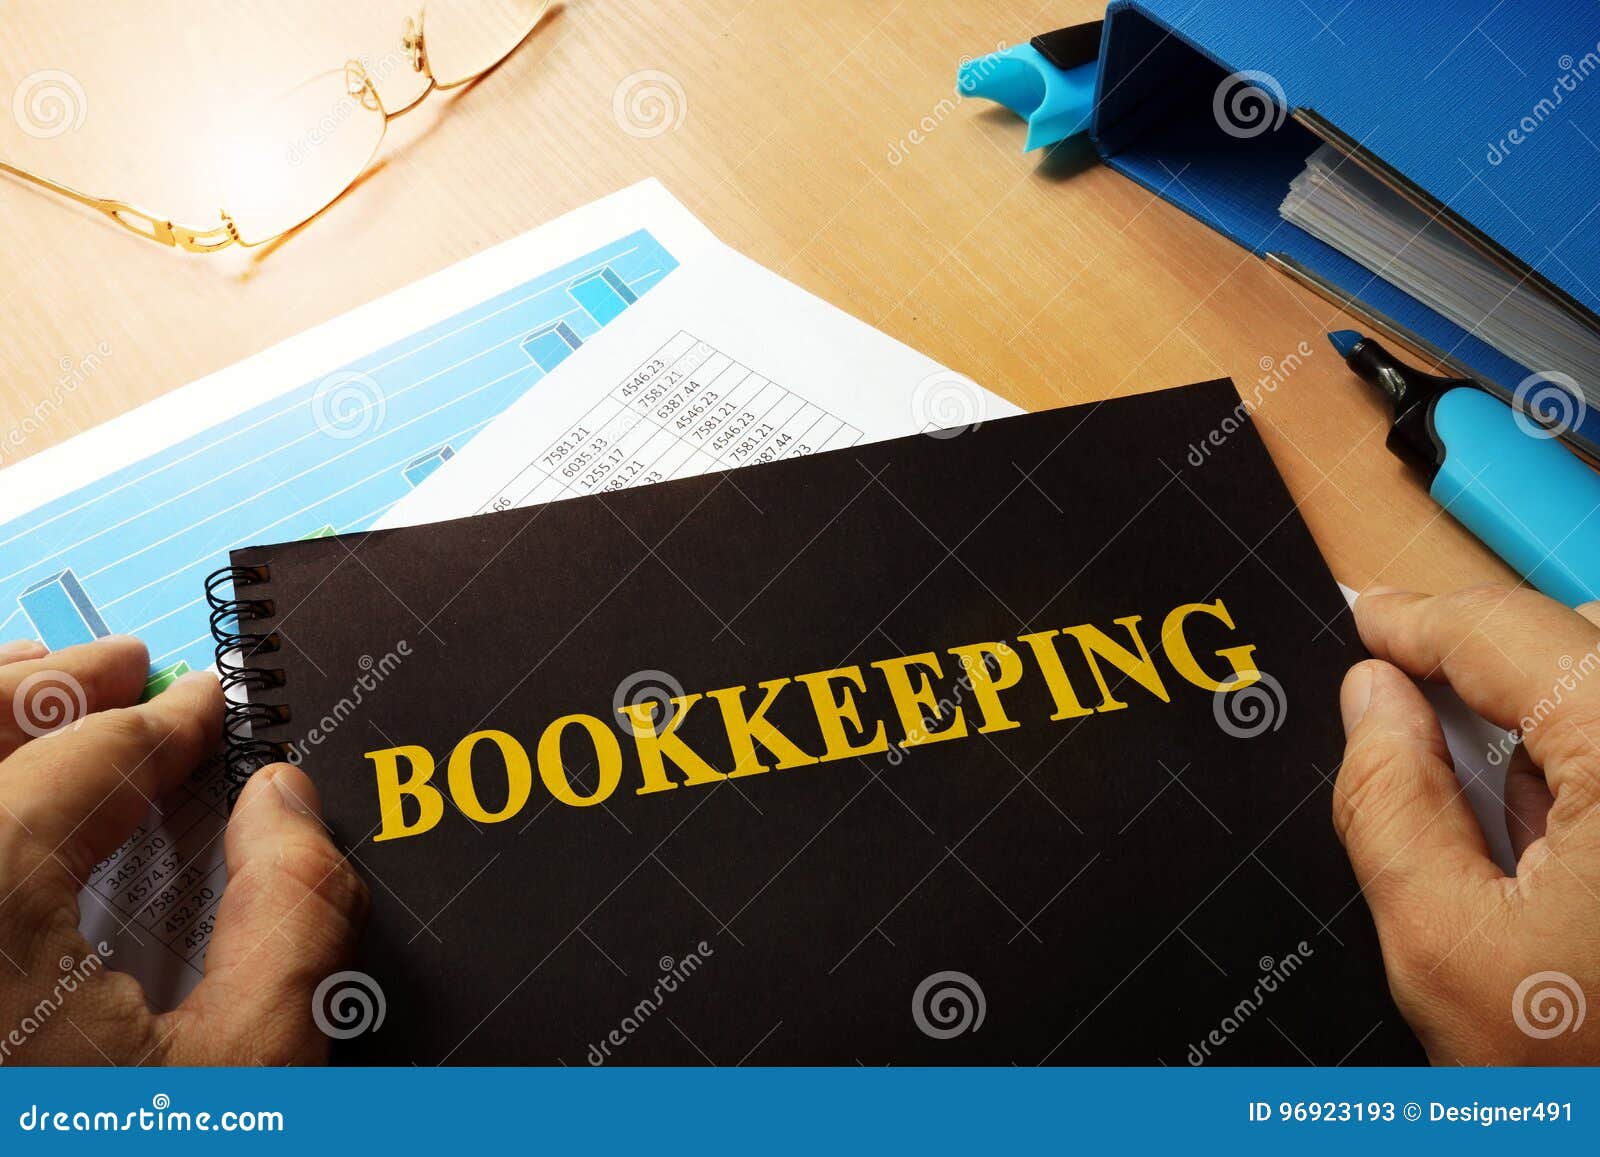 bookkeeping written on a note.